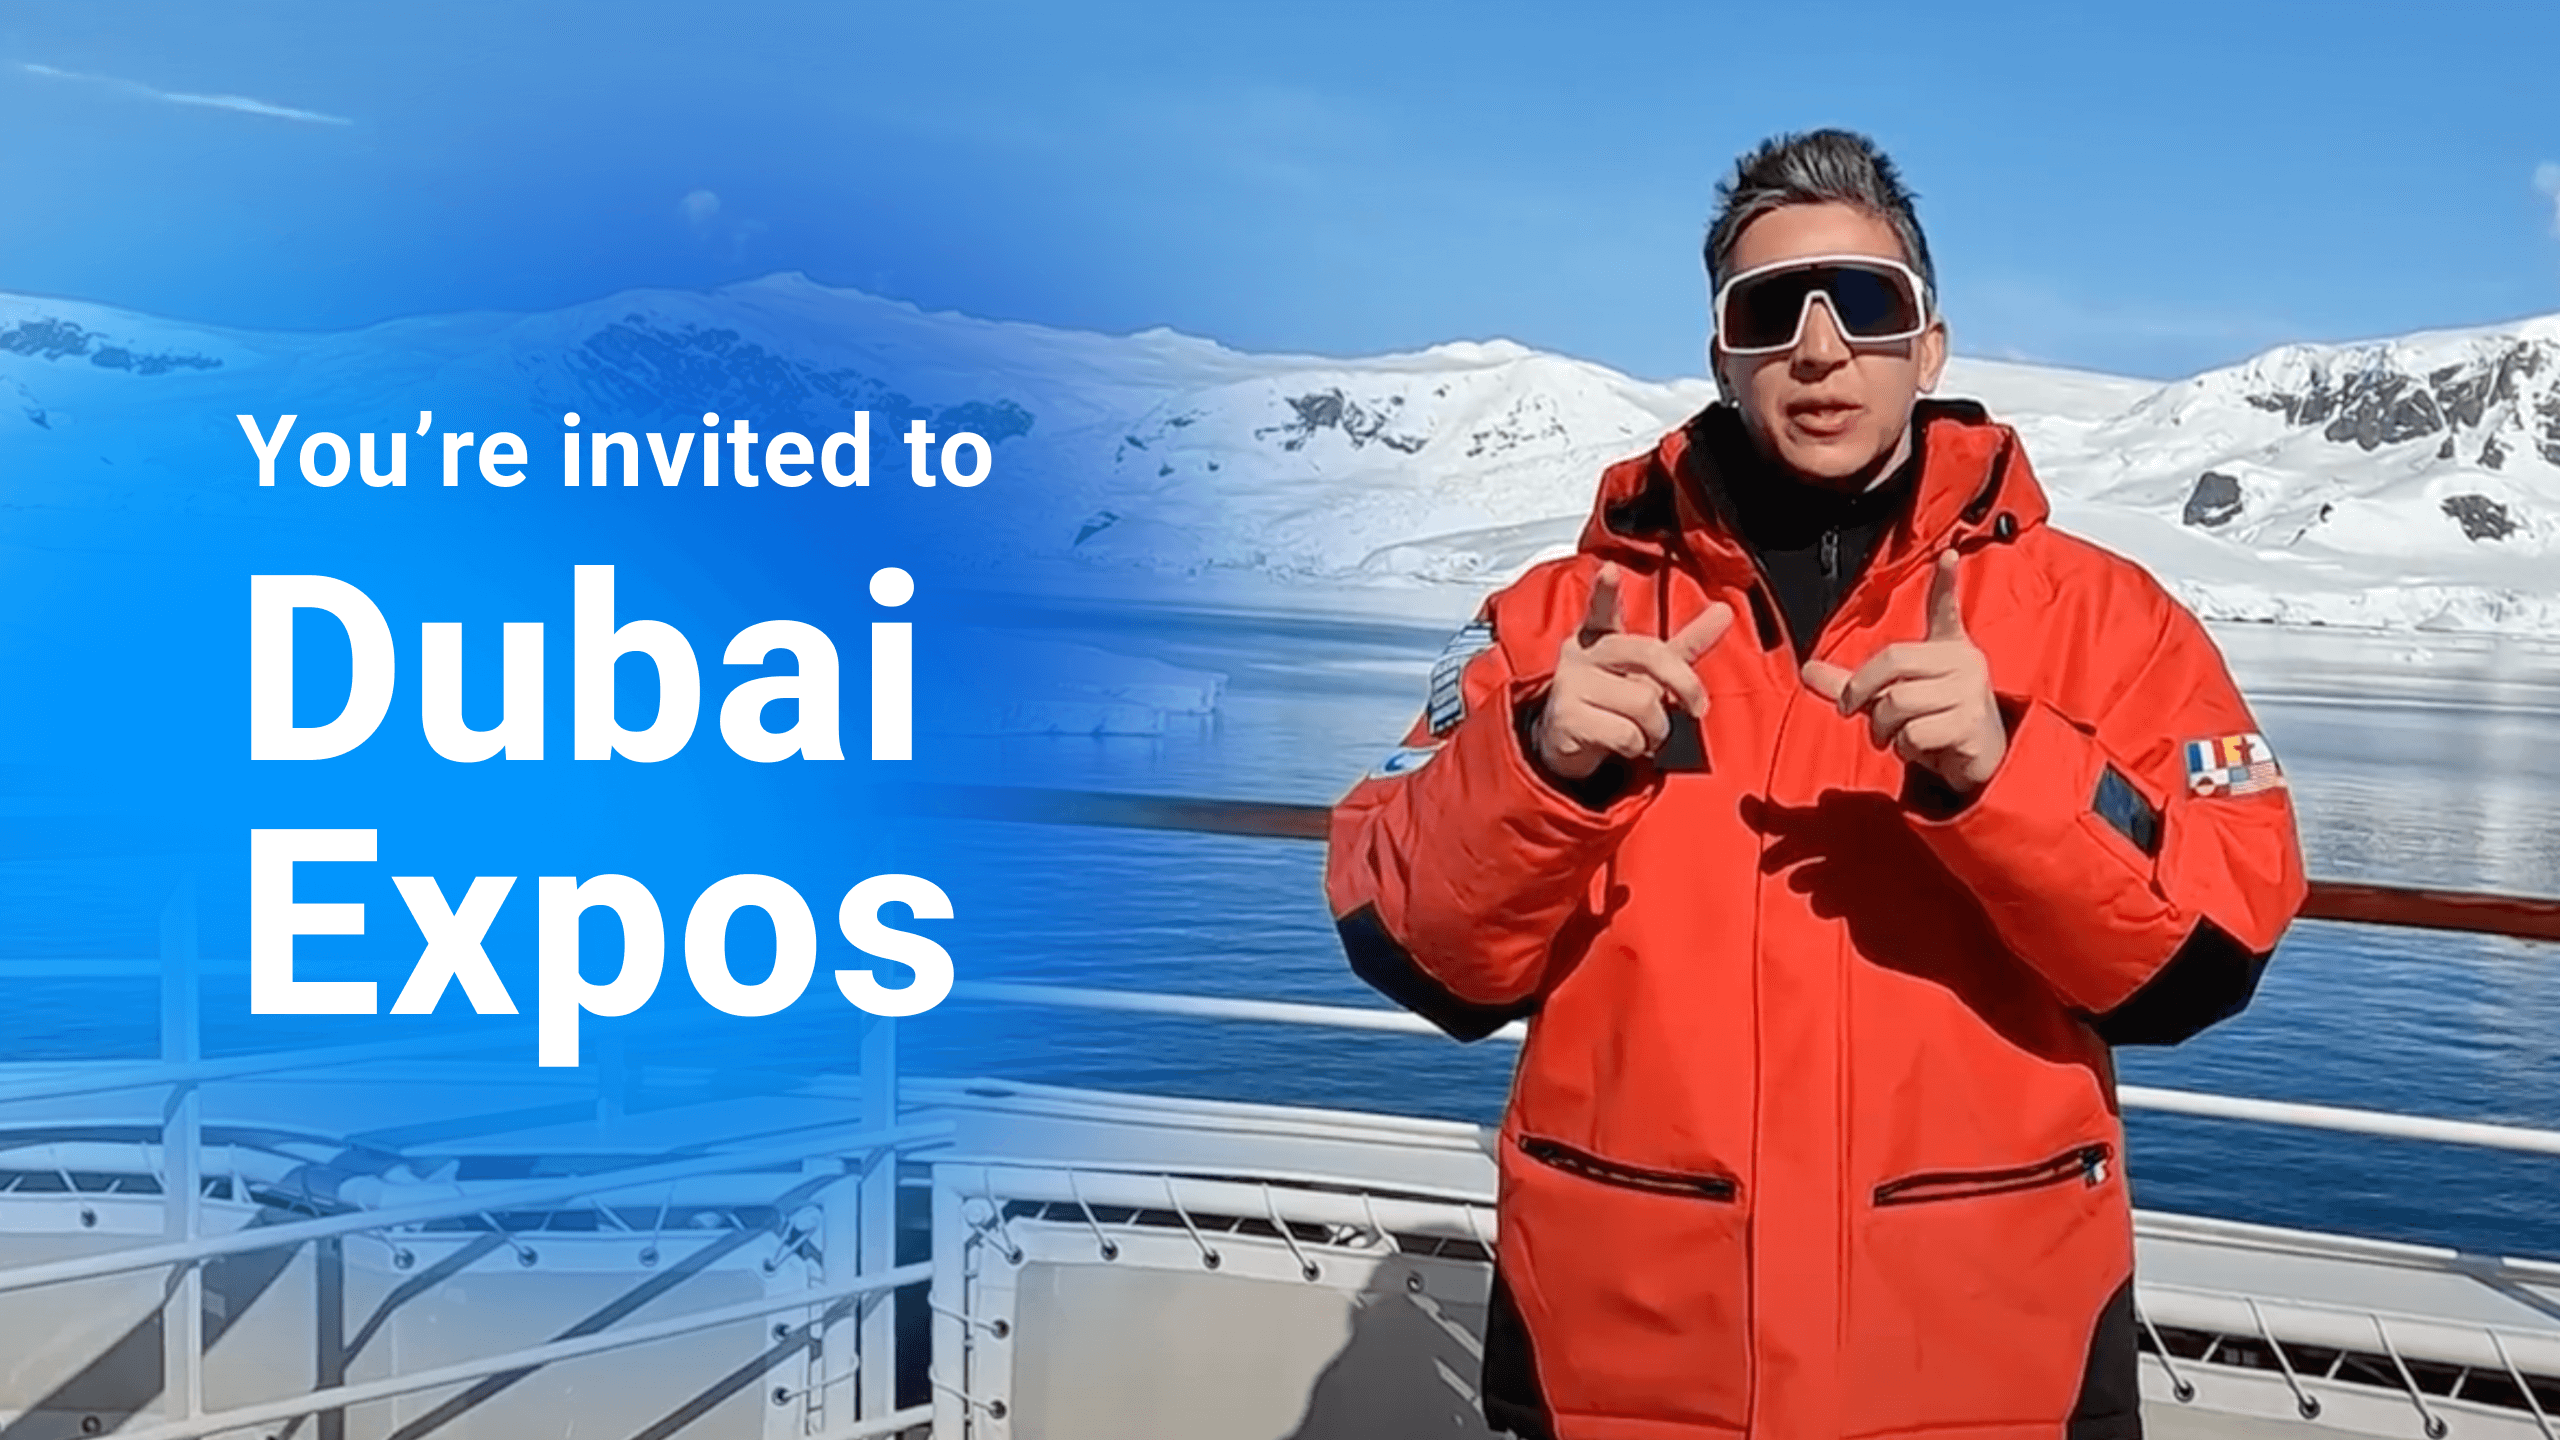 Personal Expo Invitation from CEO Arthur Azizov